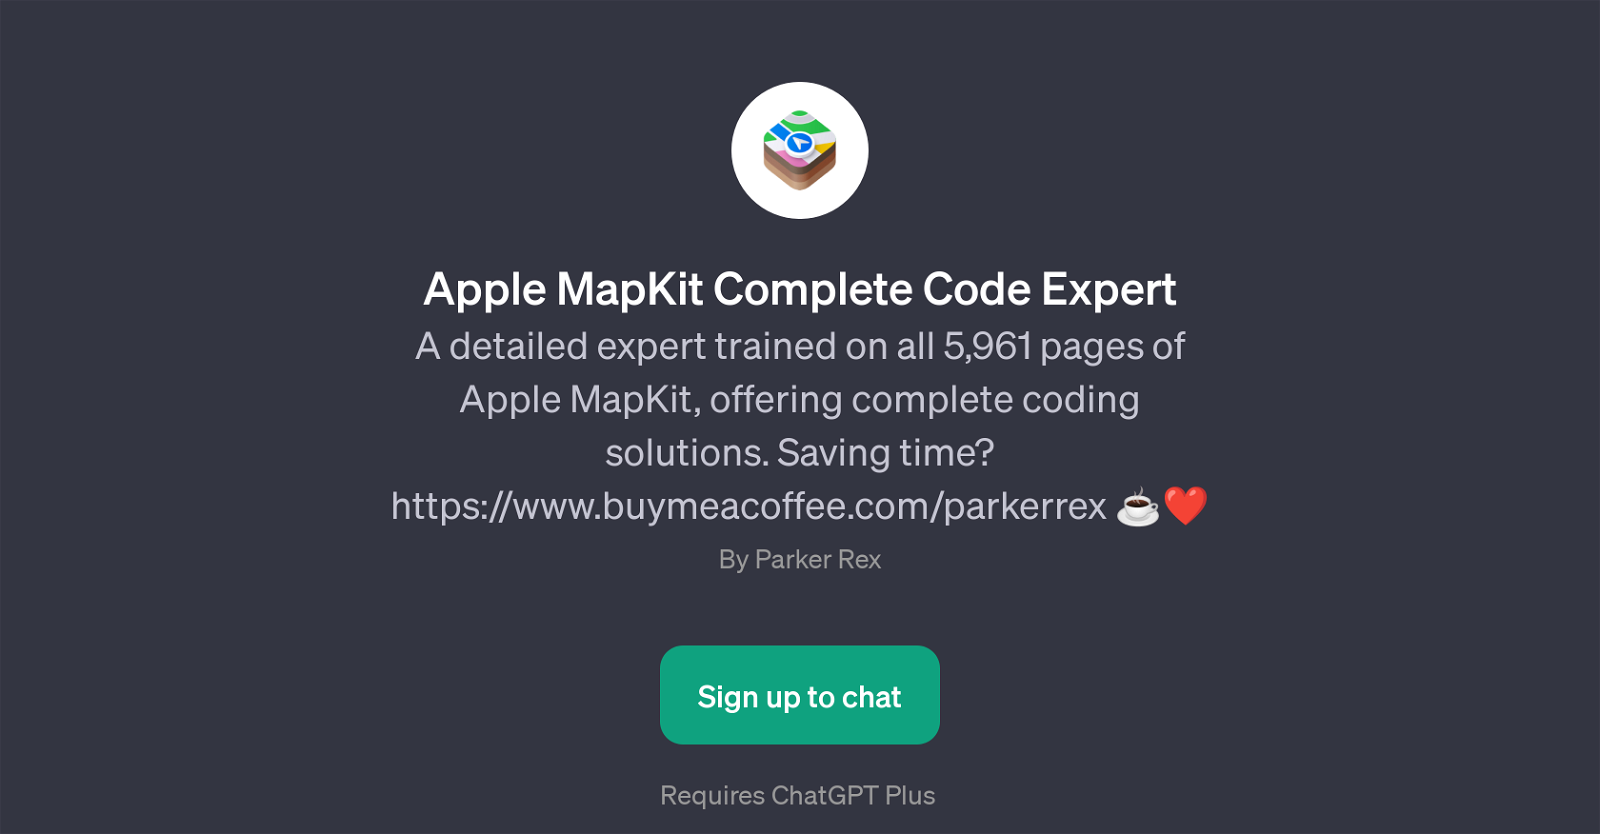 Apple MapKit Complete Code Expert website